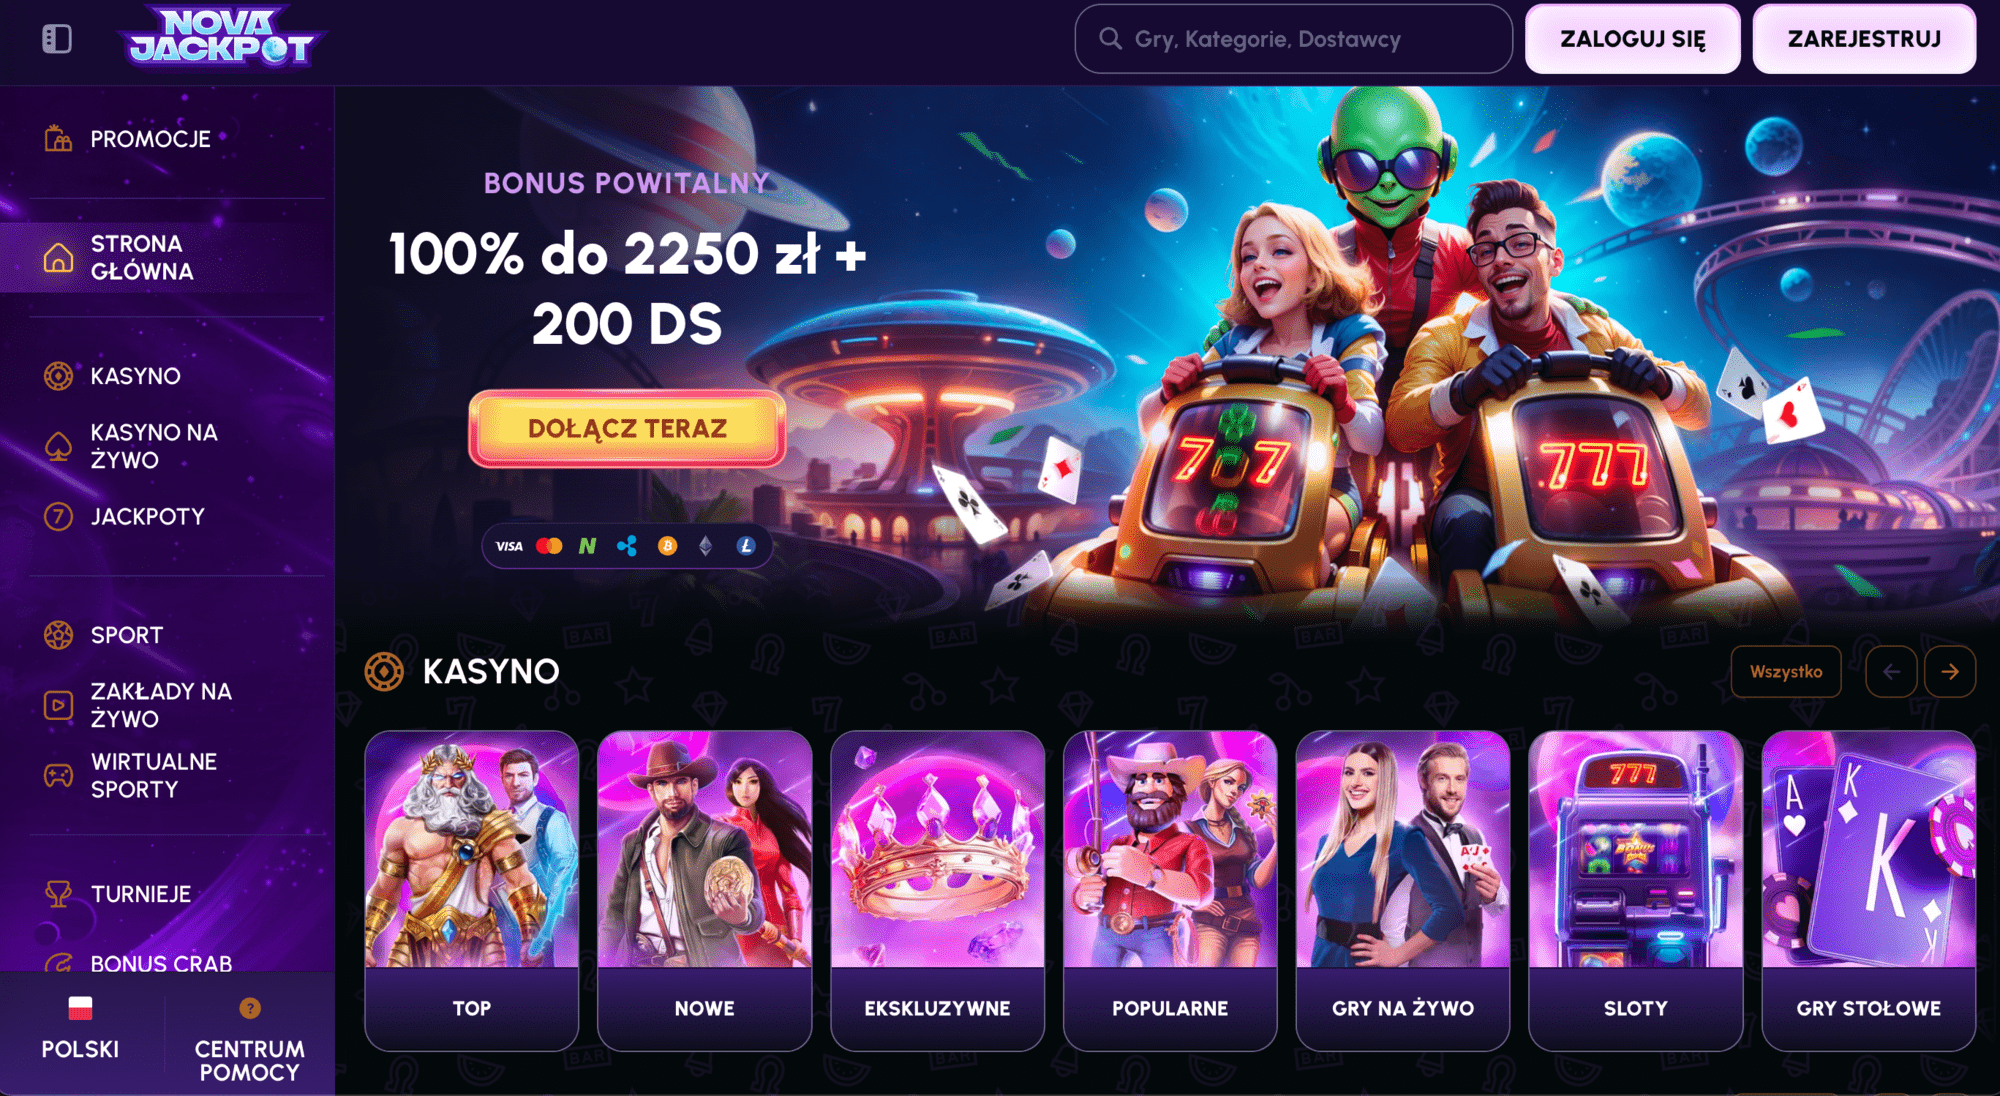 Nova Jackpot home page